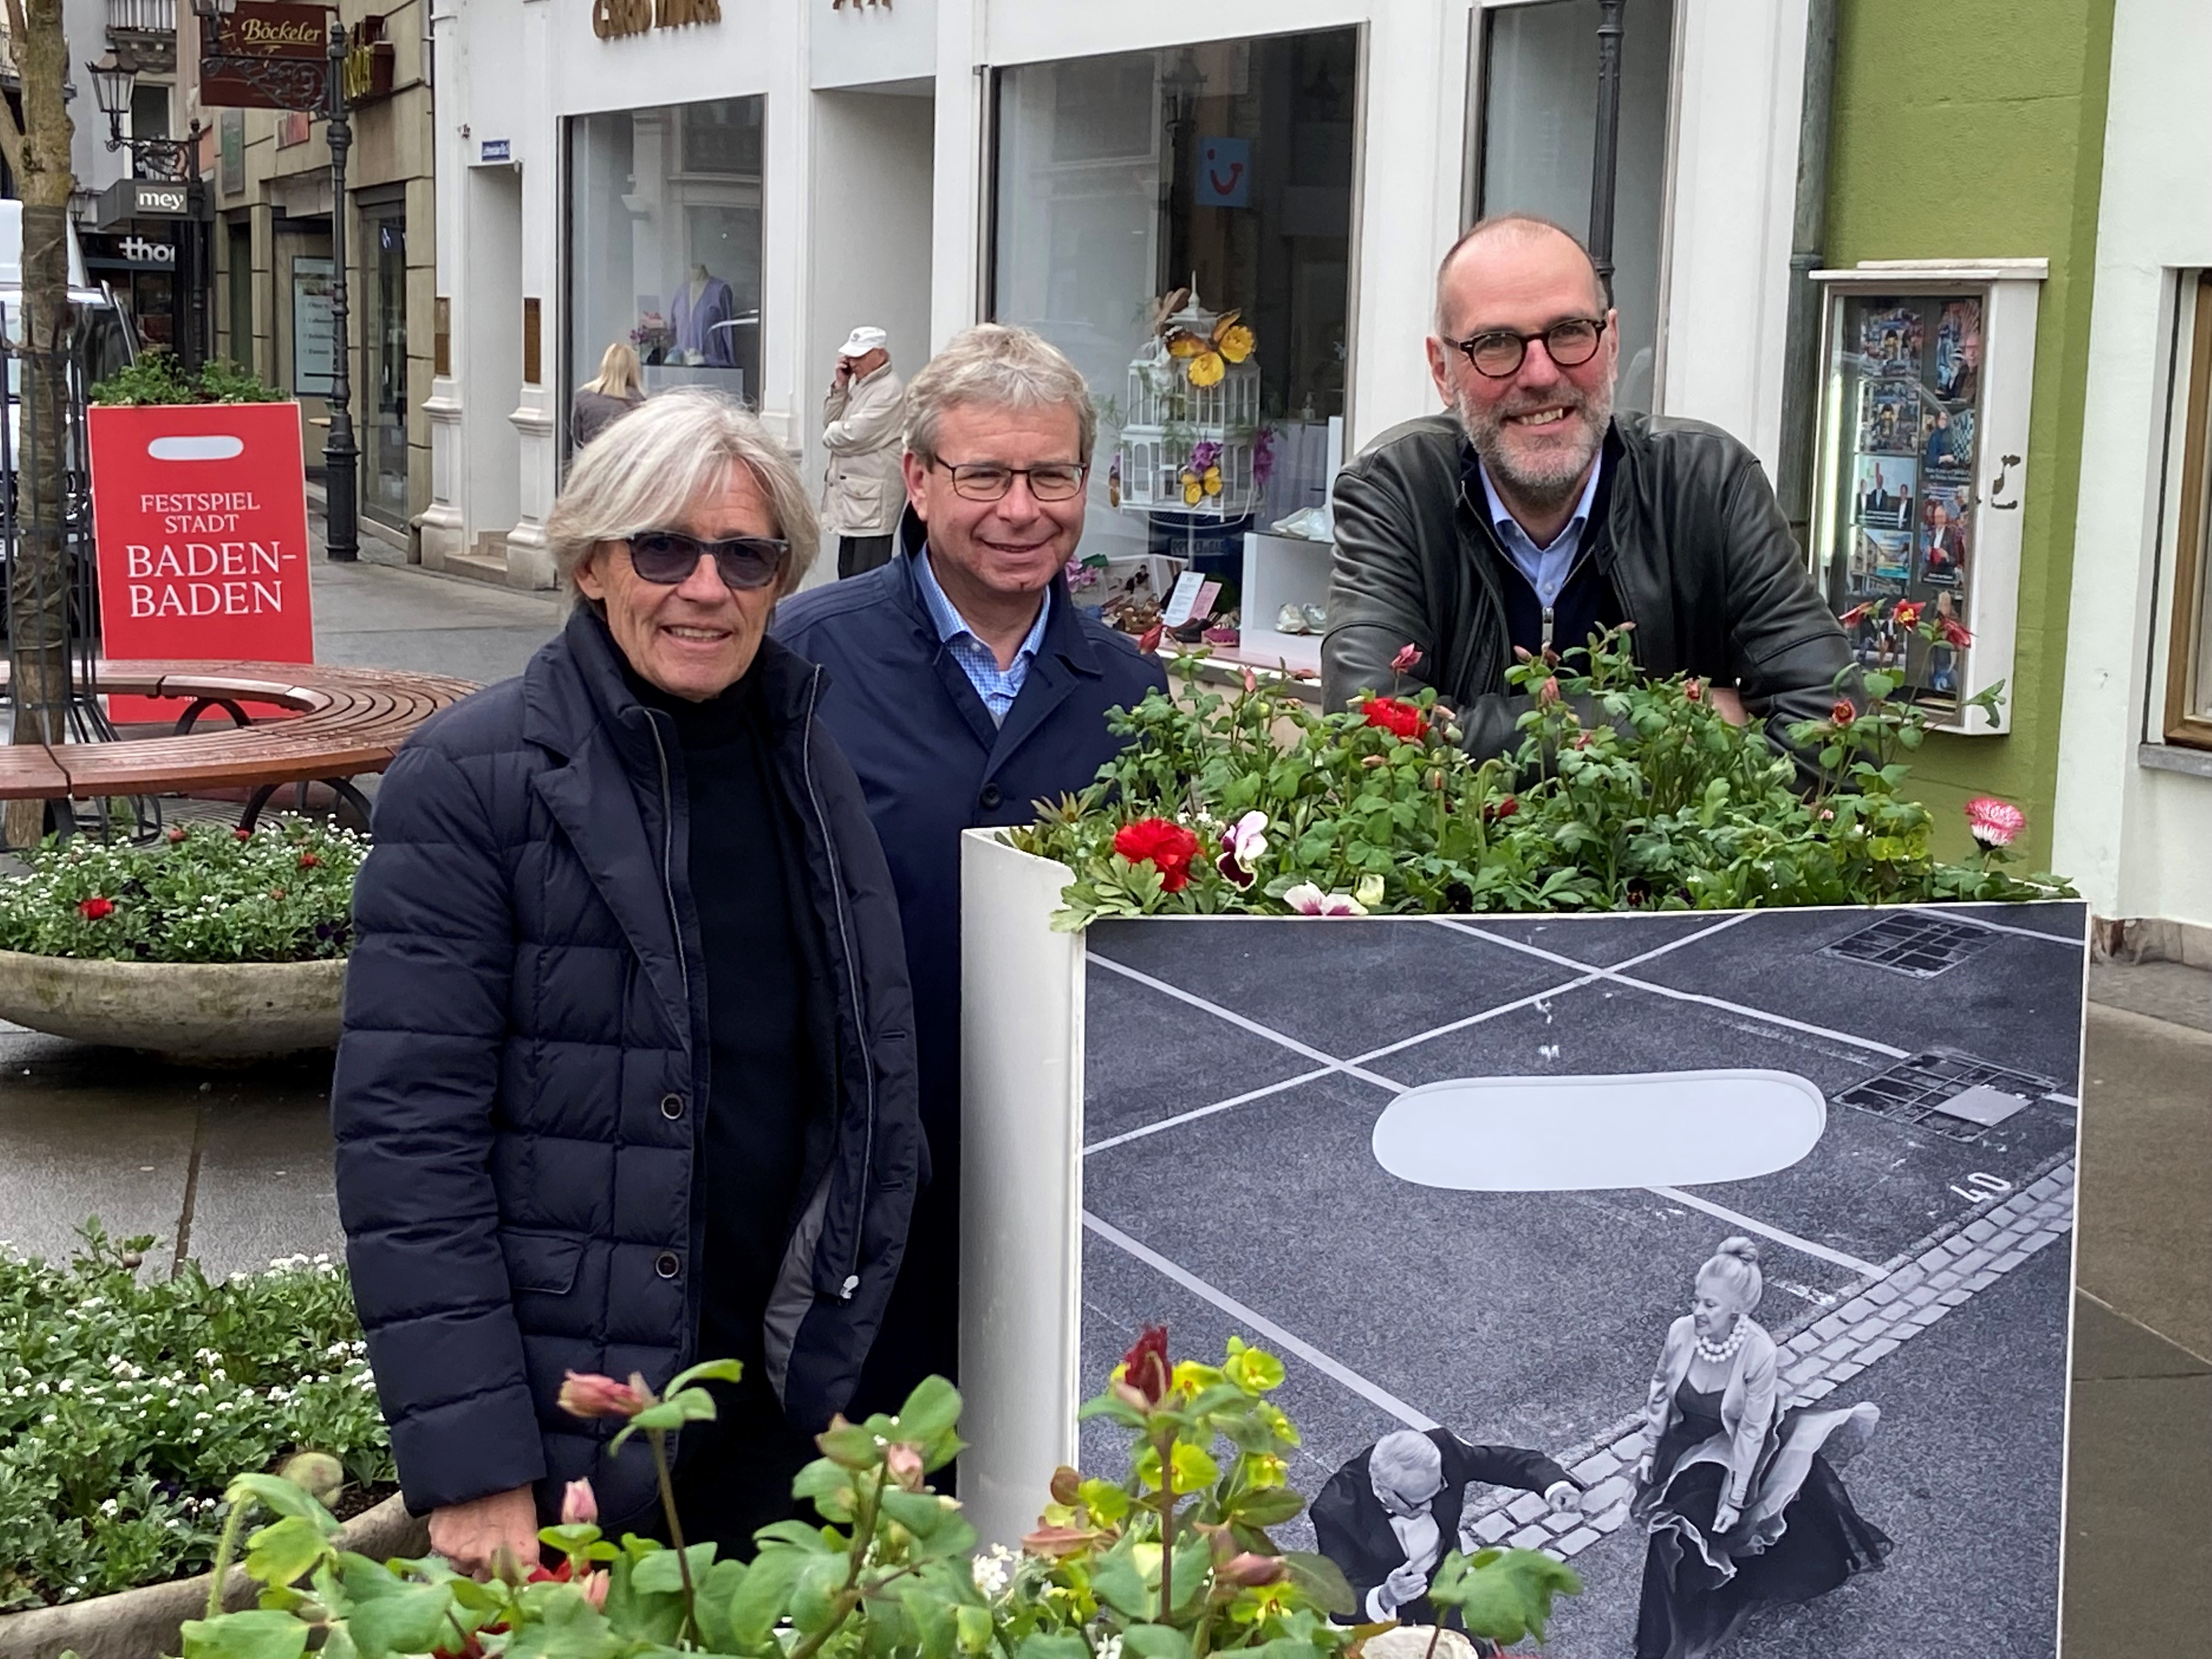 Flower Power in Baden-Baden mit Festspielhaus und Einzelhändlern – „Akelei, Goldlack, Ranunkeln, Stiefmütterchen und Hornveilchen“